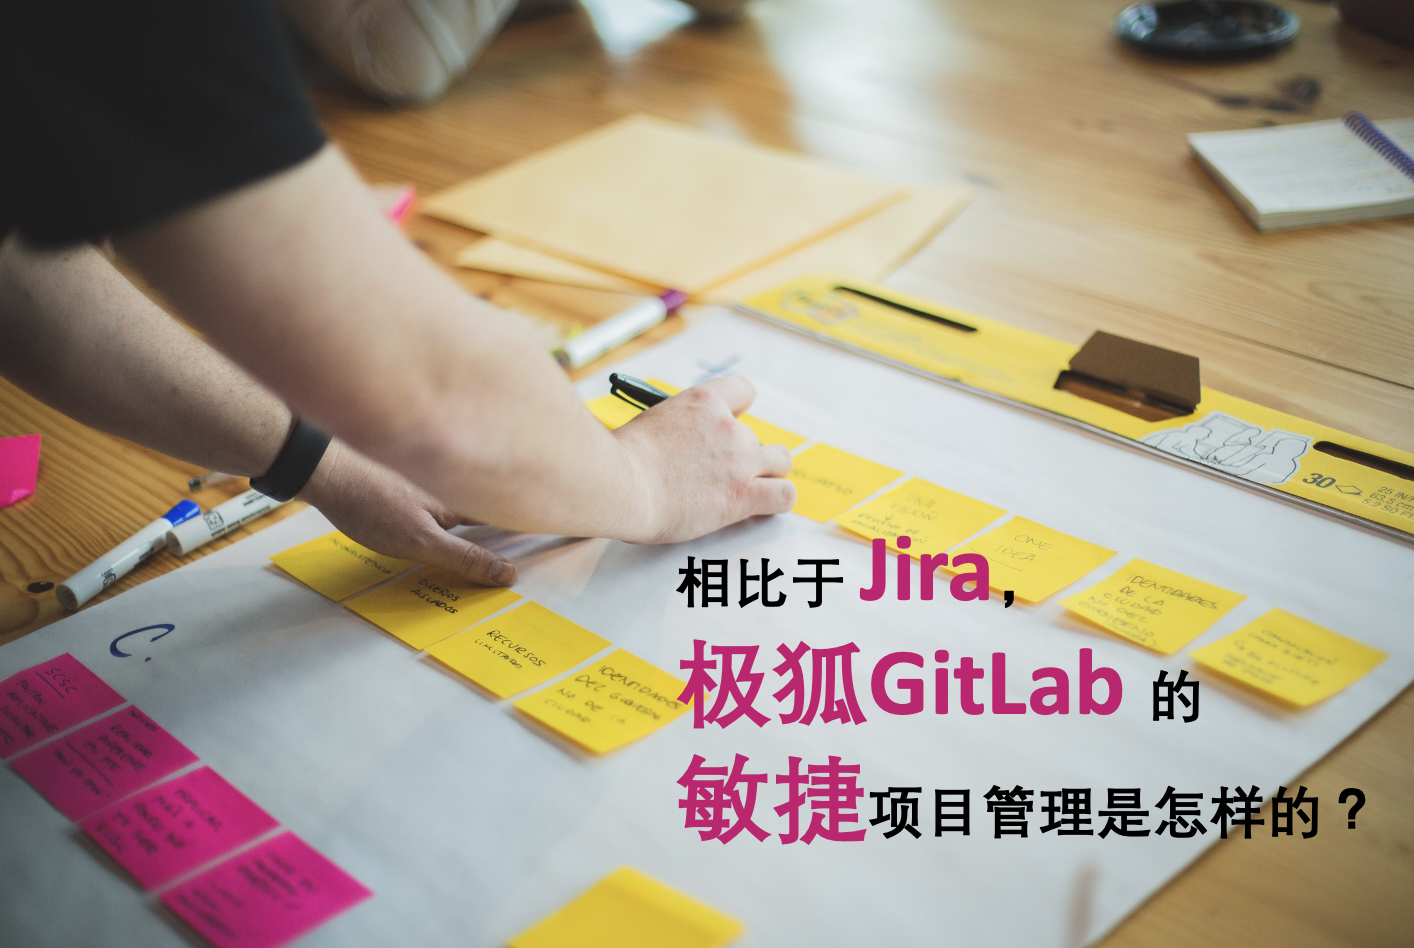 相比于 Jira，极狐GitLab 的敏捷项目管理是怎样的？